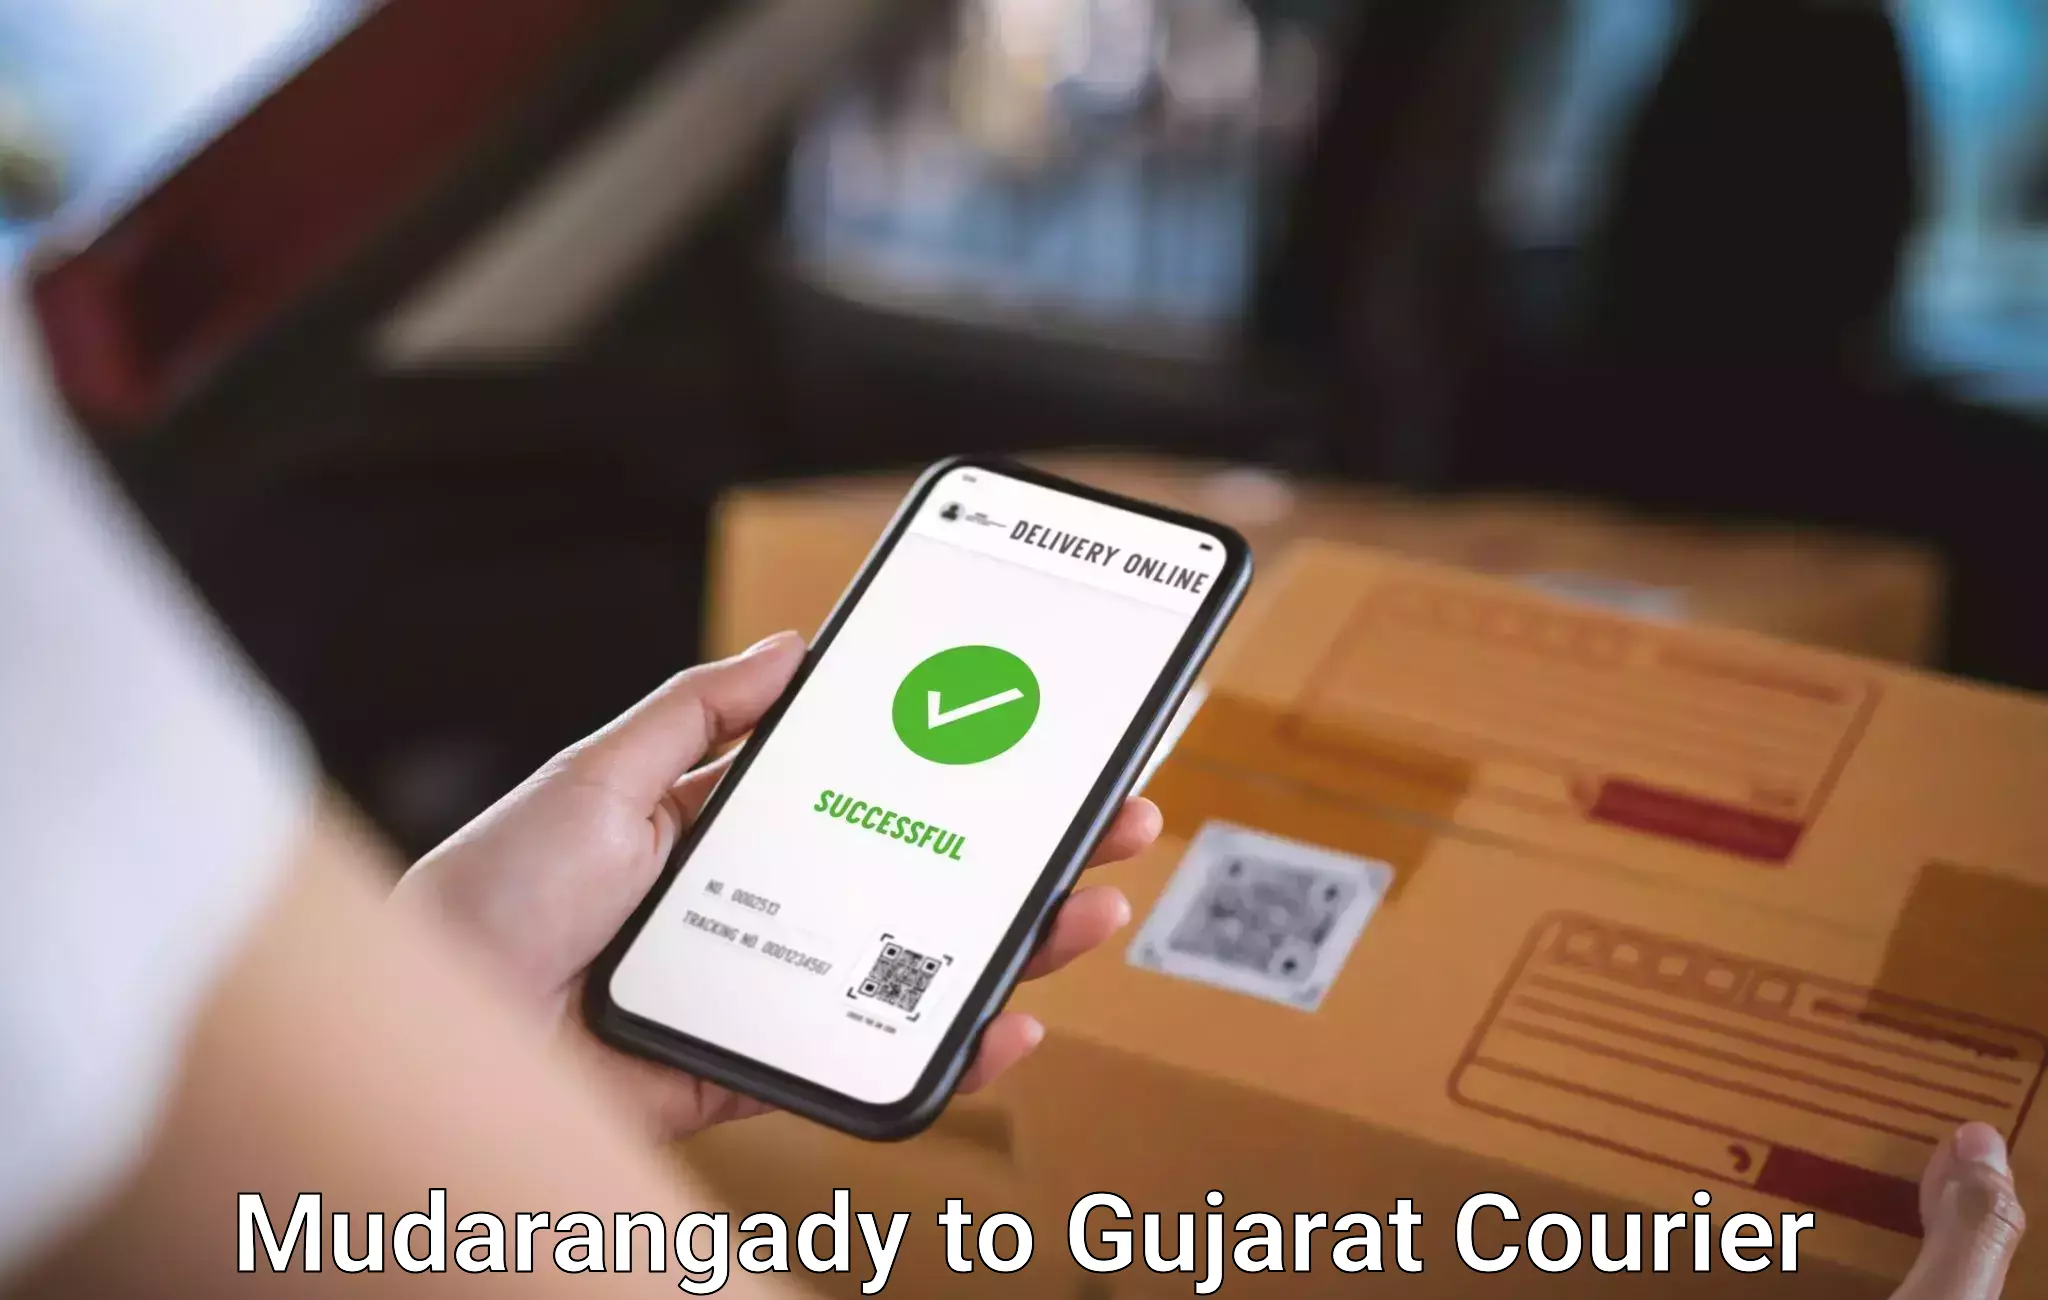 Baggage shipping advice Mudarangady to IIT Gandhi Nagar